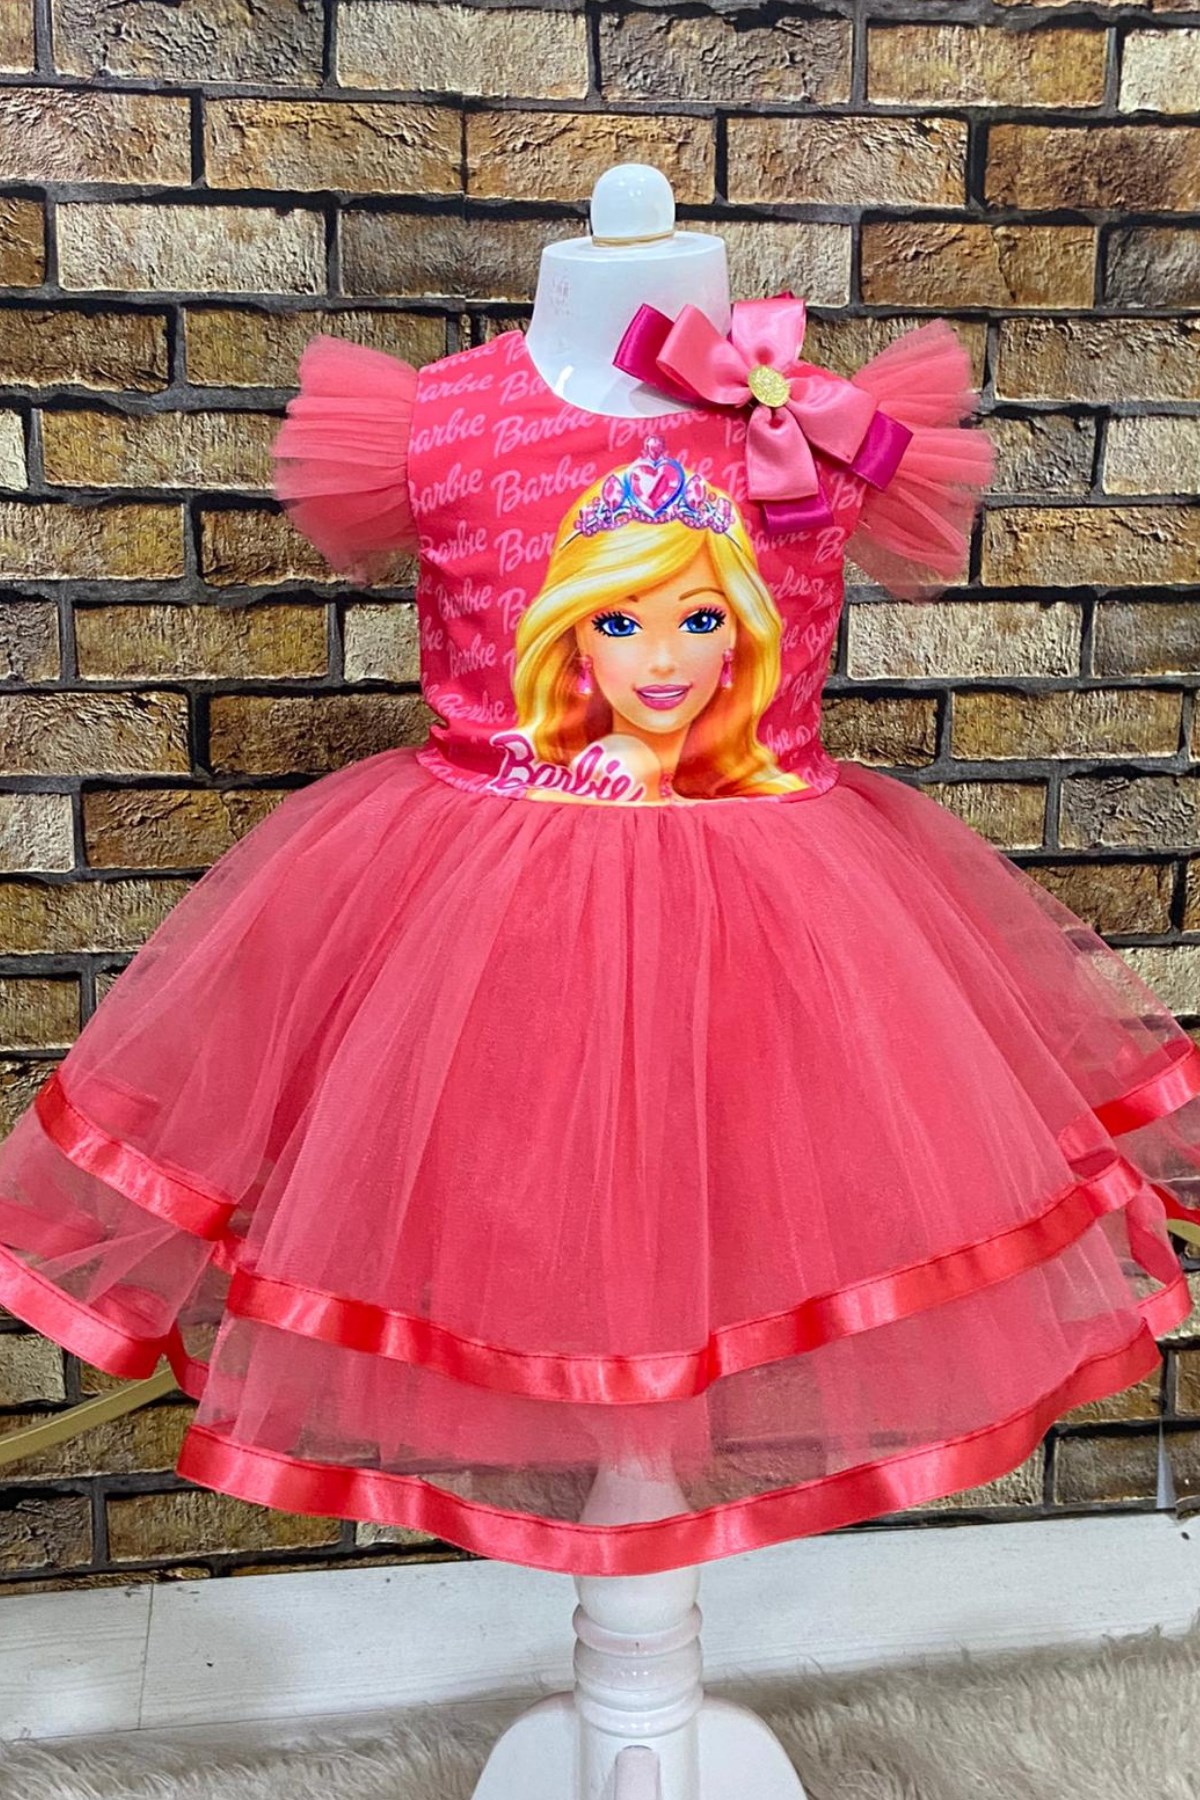 Barbie Tütülü Toka Dahil Kız Çocuk Elbise Fuşya | Turuncugardrop.com